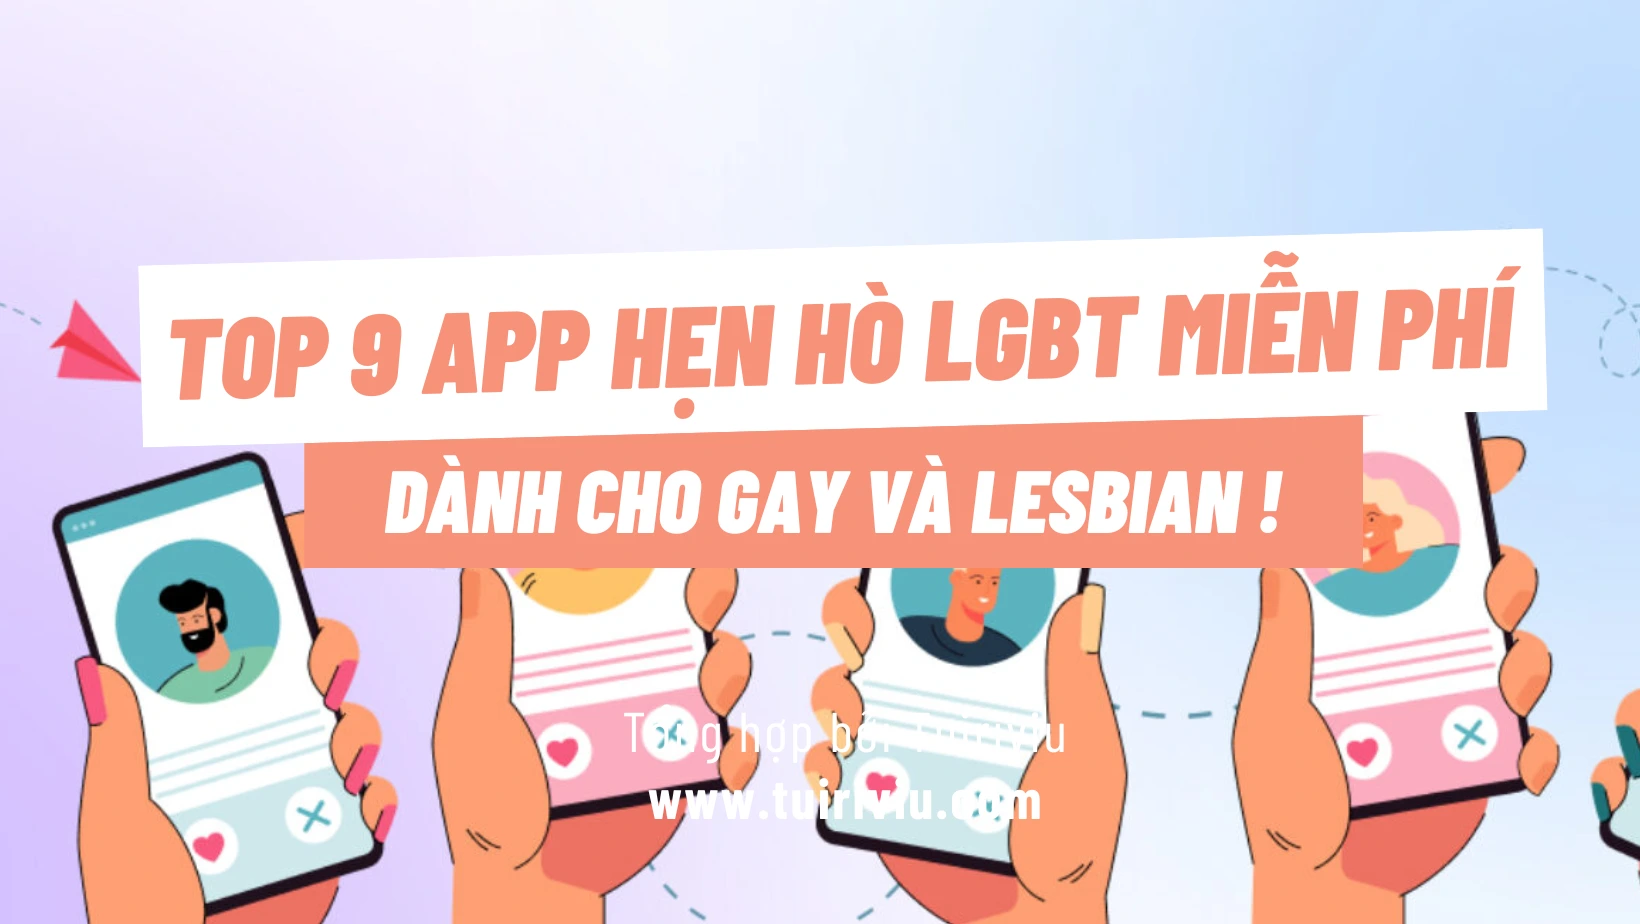 9 app hẹn hò LGBT cho nam nữ, gay lesbian uy tín